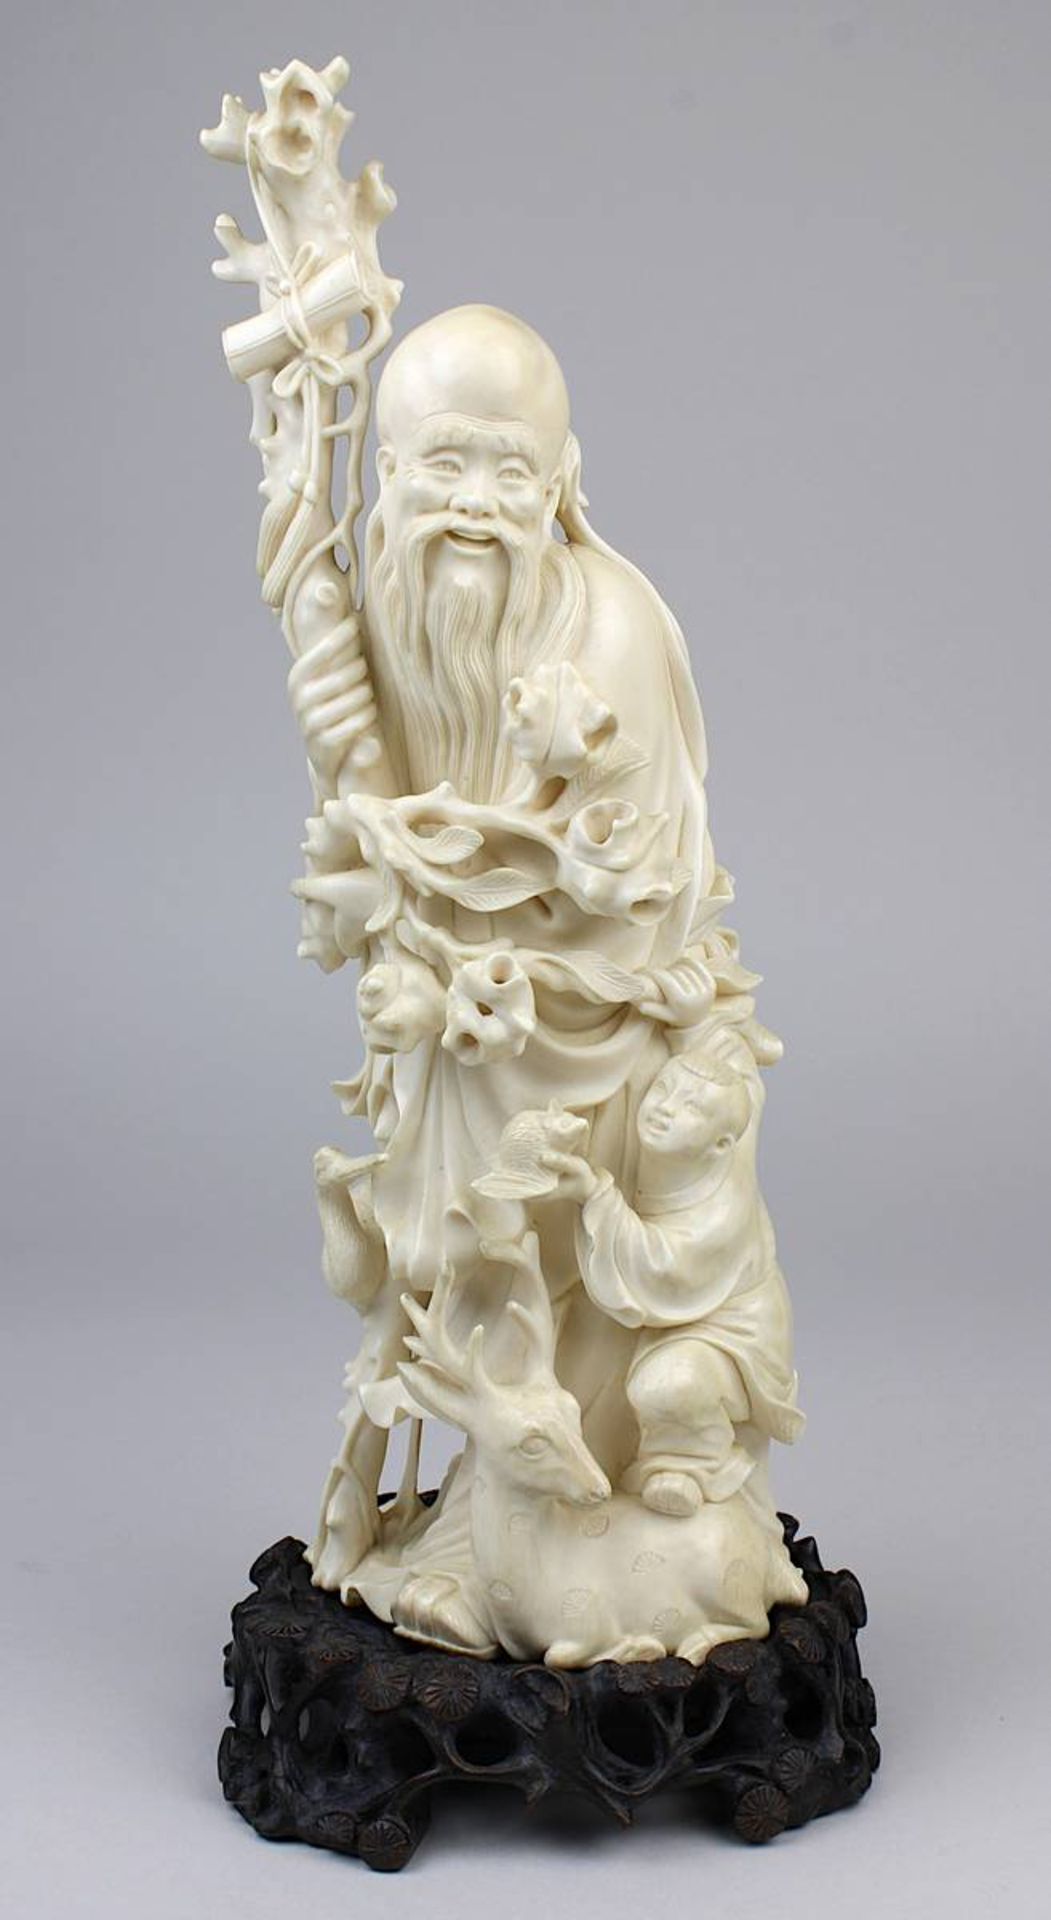 Stehender Shou Xing aus Elfenbein, China um 1920, stehende Figur des Gottes der Langlebigkeit als